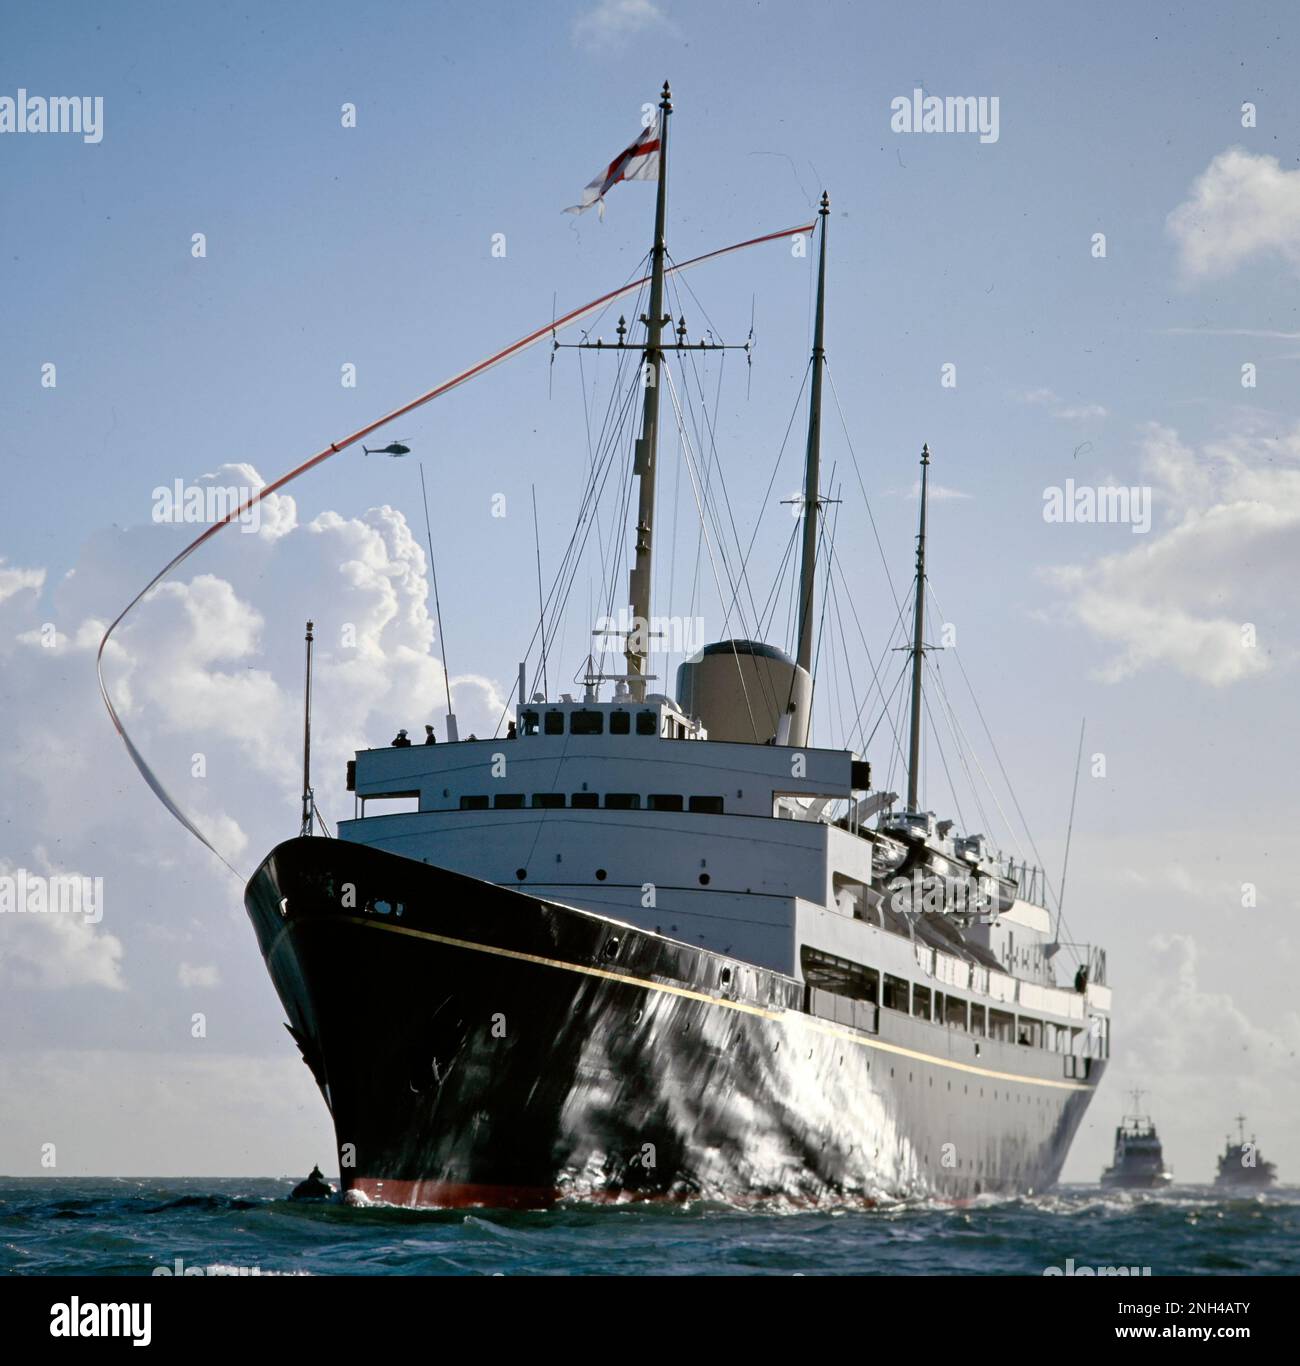 Samstag, 22. November 1997, Yacht Britannia Ihrer Majestät kehrt nach Portsmouth zurück und fliegt zum letzten Mal ihren Geldbeutel, bevor sie am 11. Dezember 1997 in Portsmouth, Hampshire, England, Großbritannien, stillgelegt wird Stockfoto